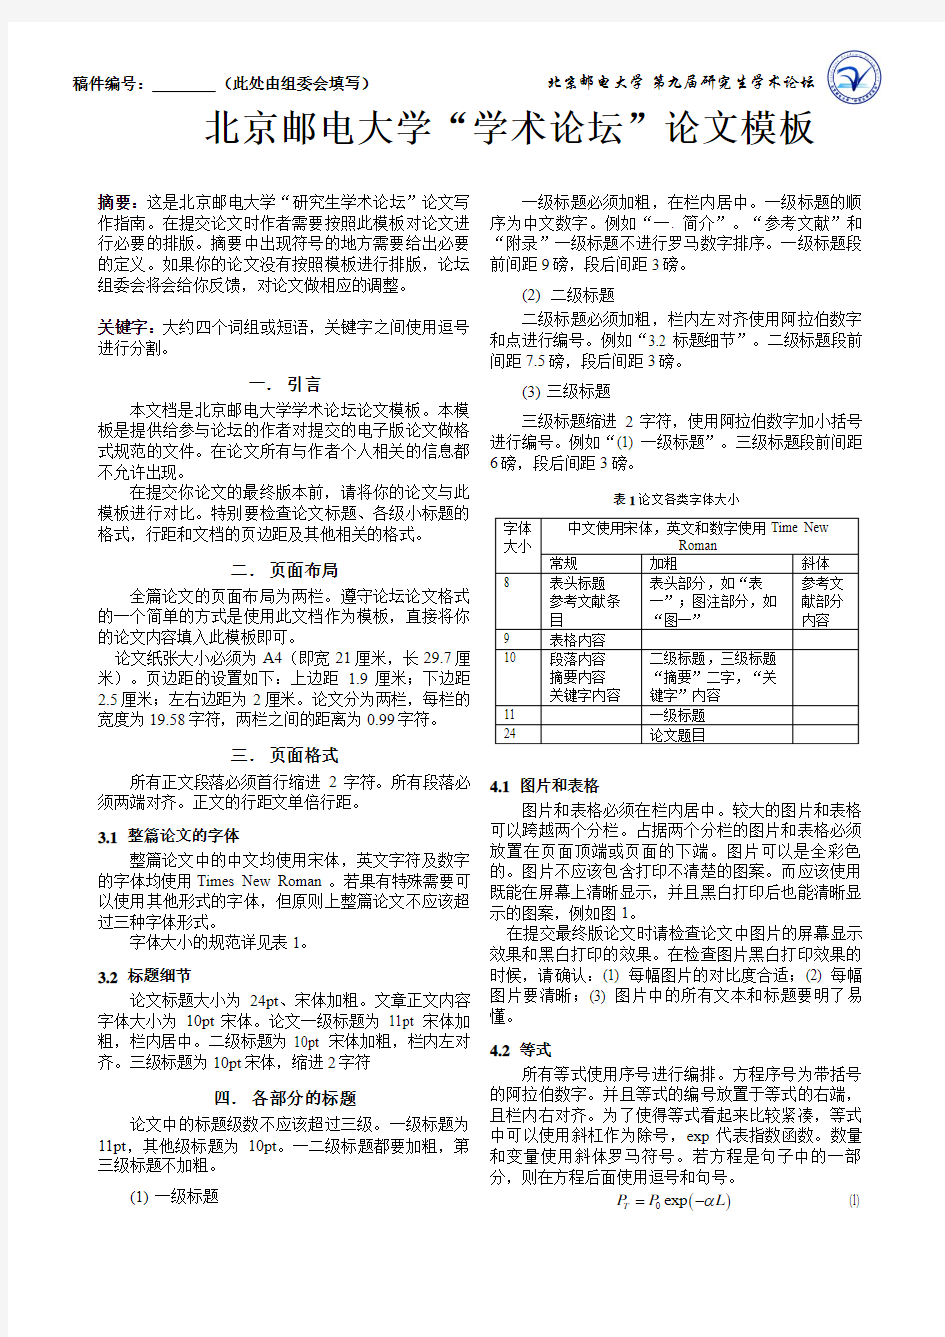 北京邮电大学“研究生学术论坛”中文论文模板